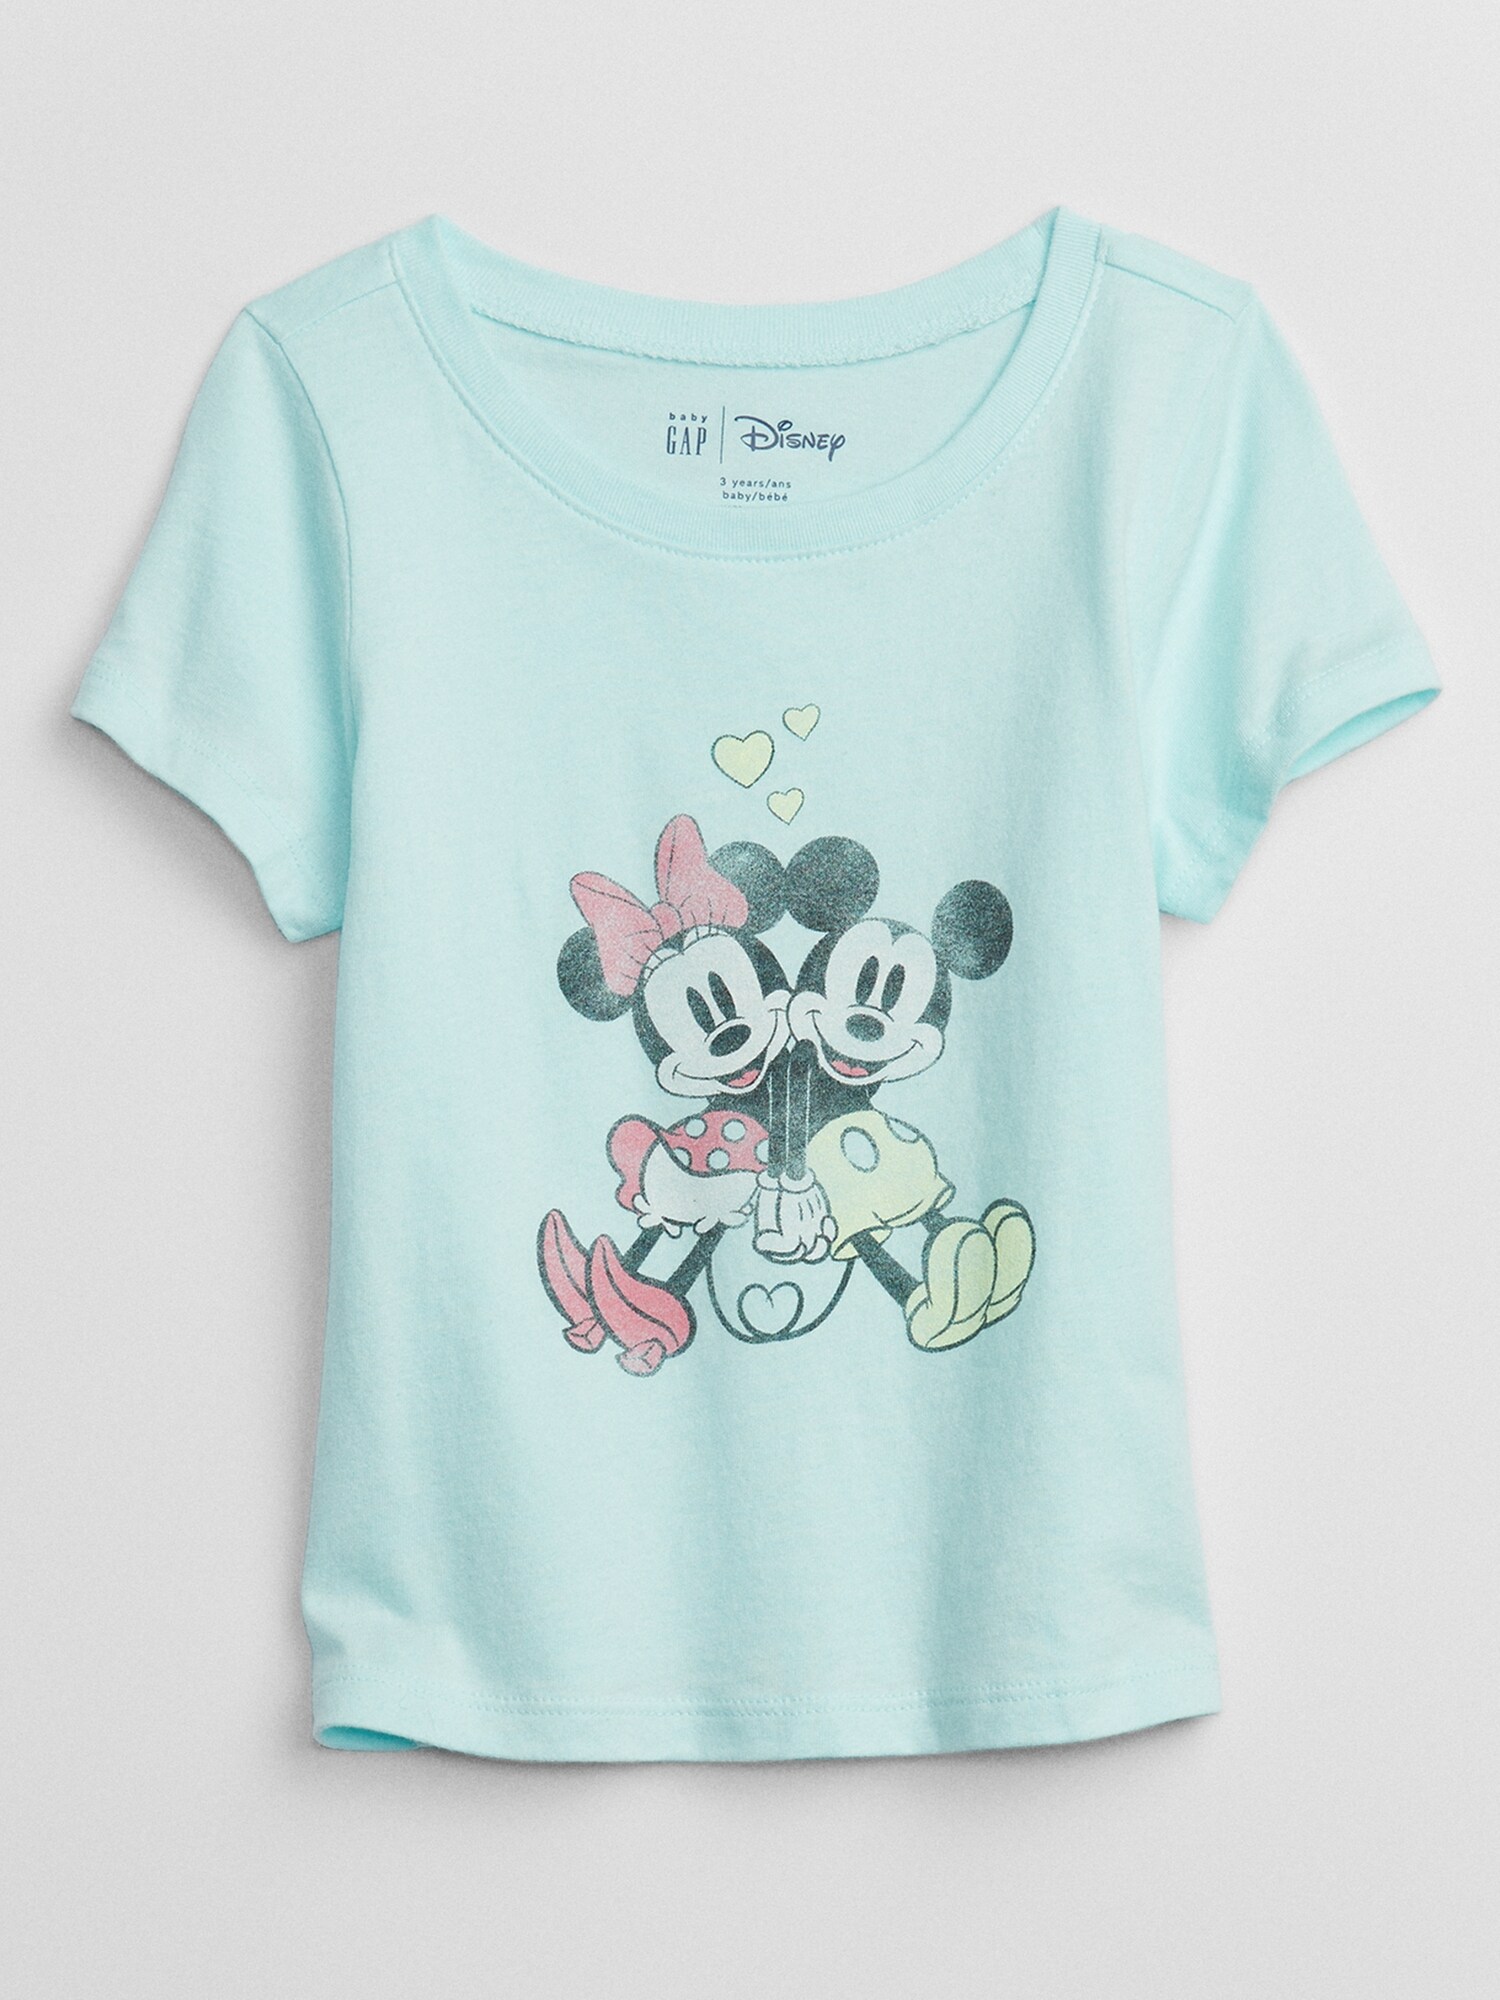 即納送料無料! baby GAP Disney Tシャツ econet.bi